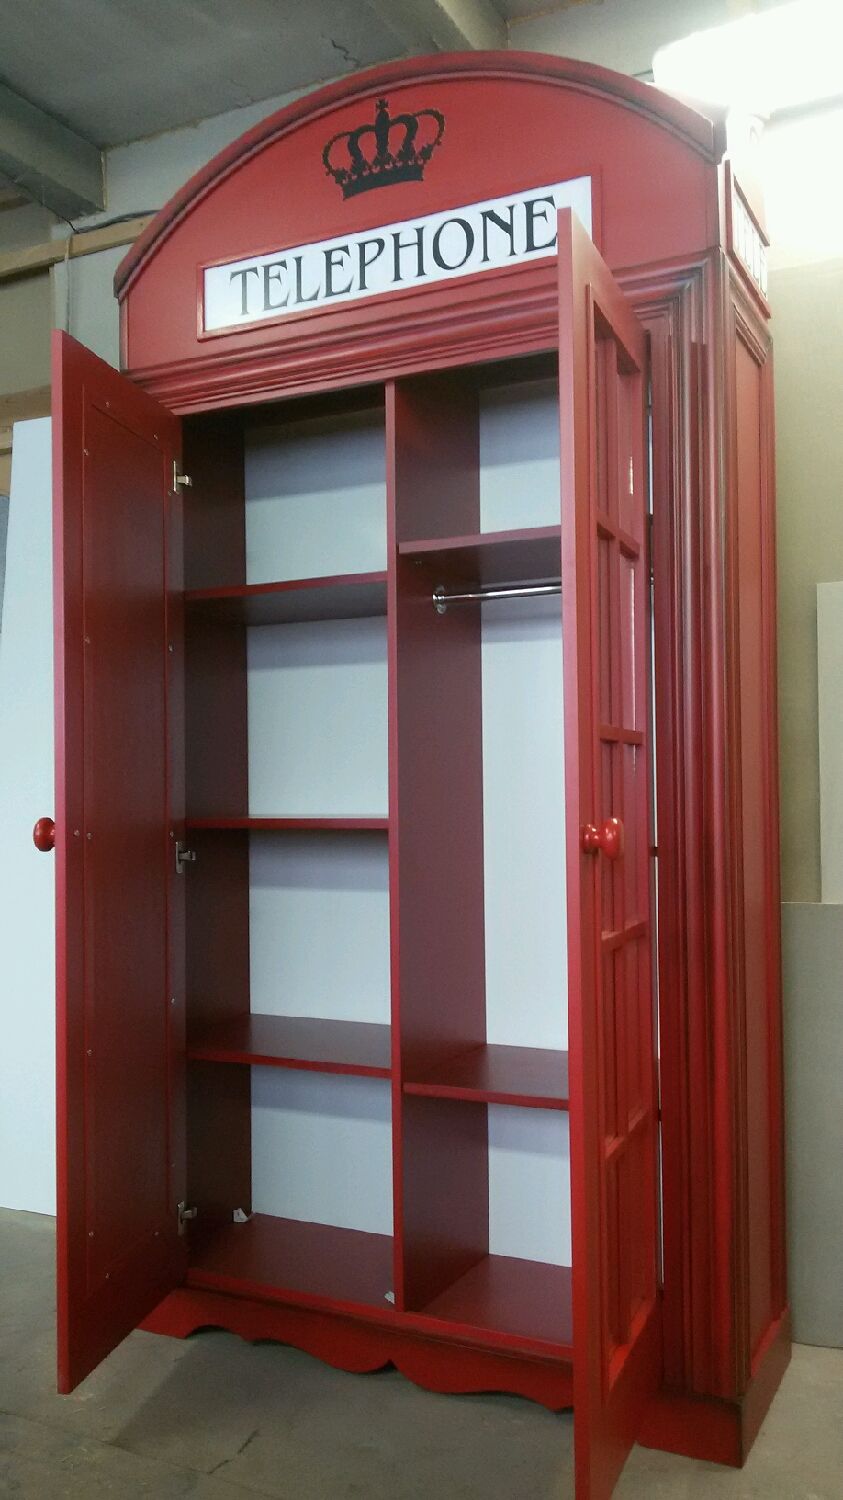 Шкаф в стиле телефонной будки